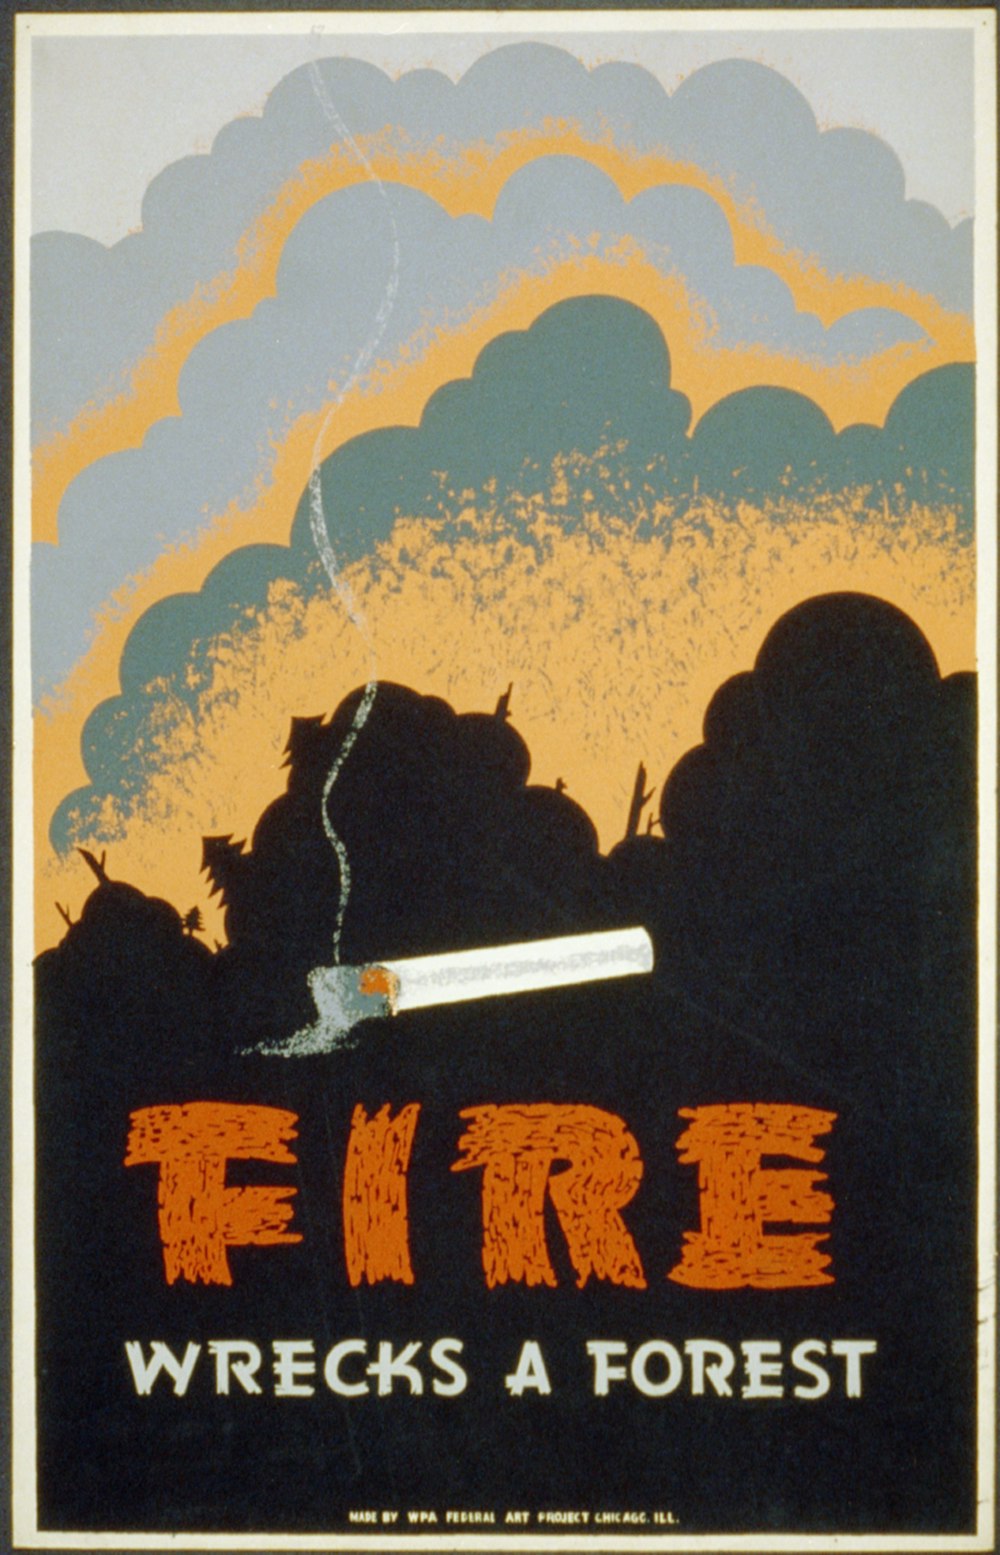 Poster per la prevenzione degli incendi boschivi che mostra una sigaretta accesa e un incendio boschivo. 